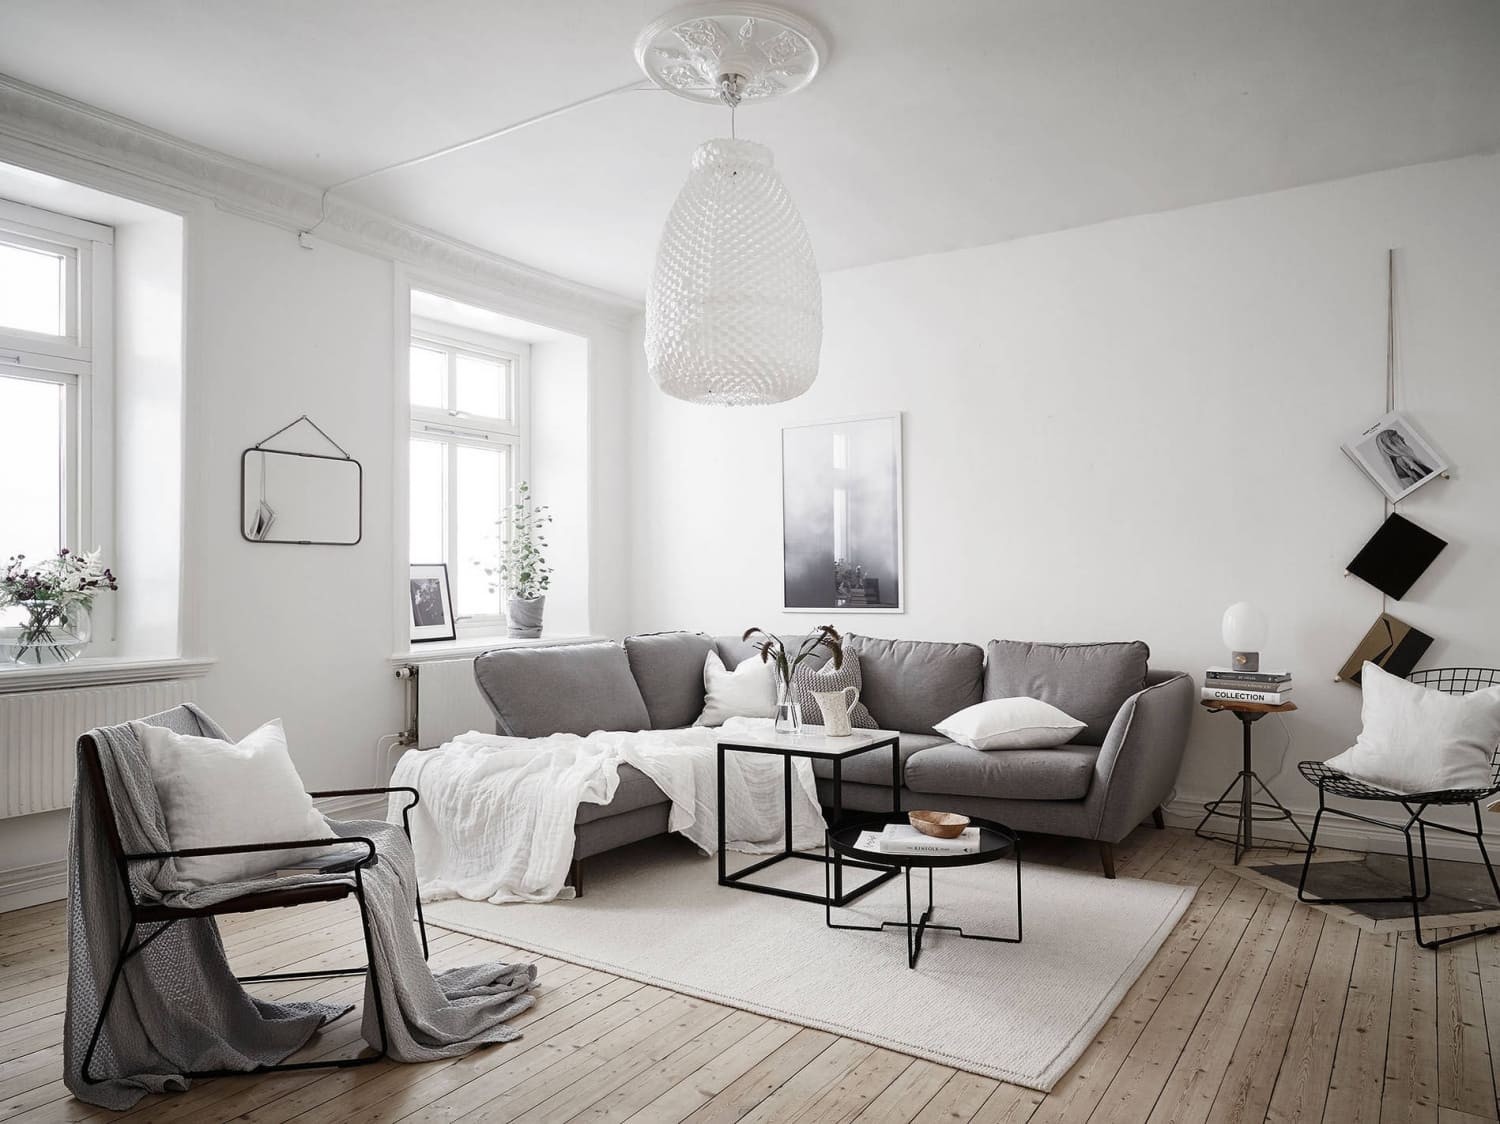 Phong cách nội thất Scandinavian có những đặc trưng rất riêng biệt về cách phối màu, tạo nên điểm nhấn đặc biệt